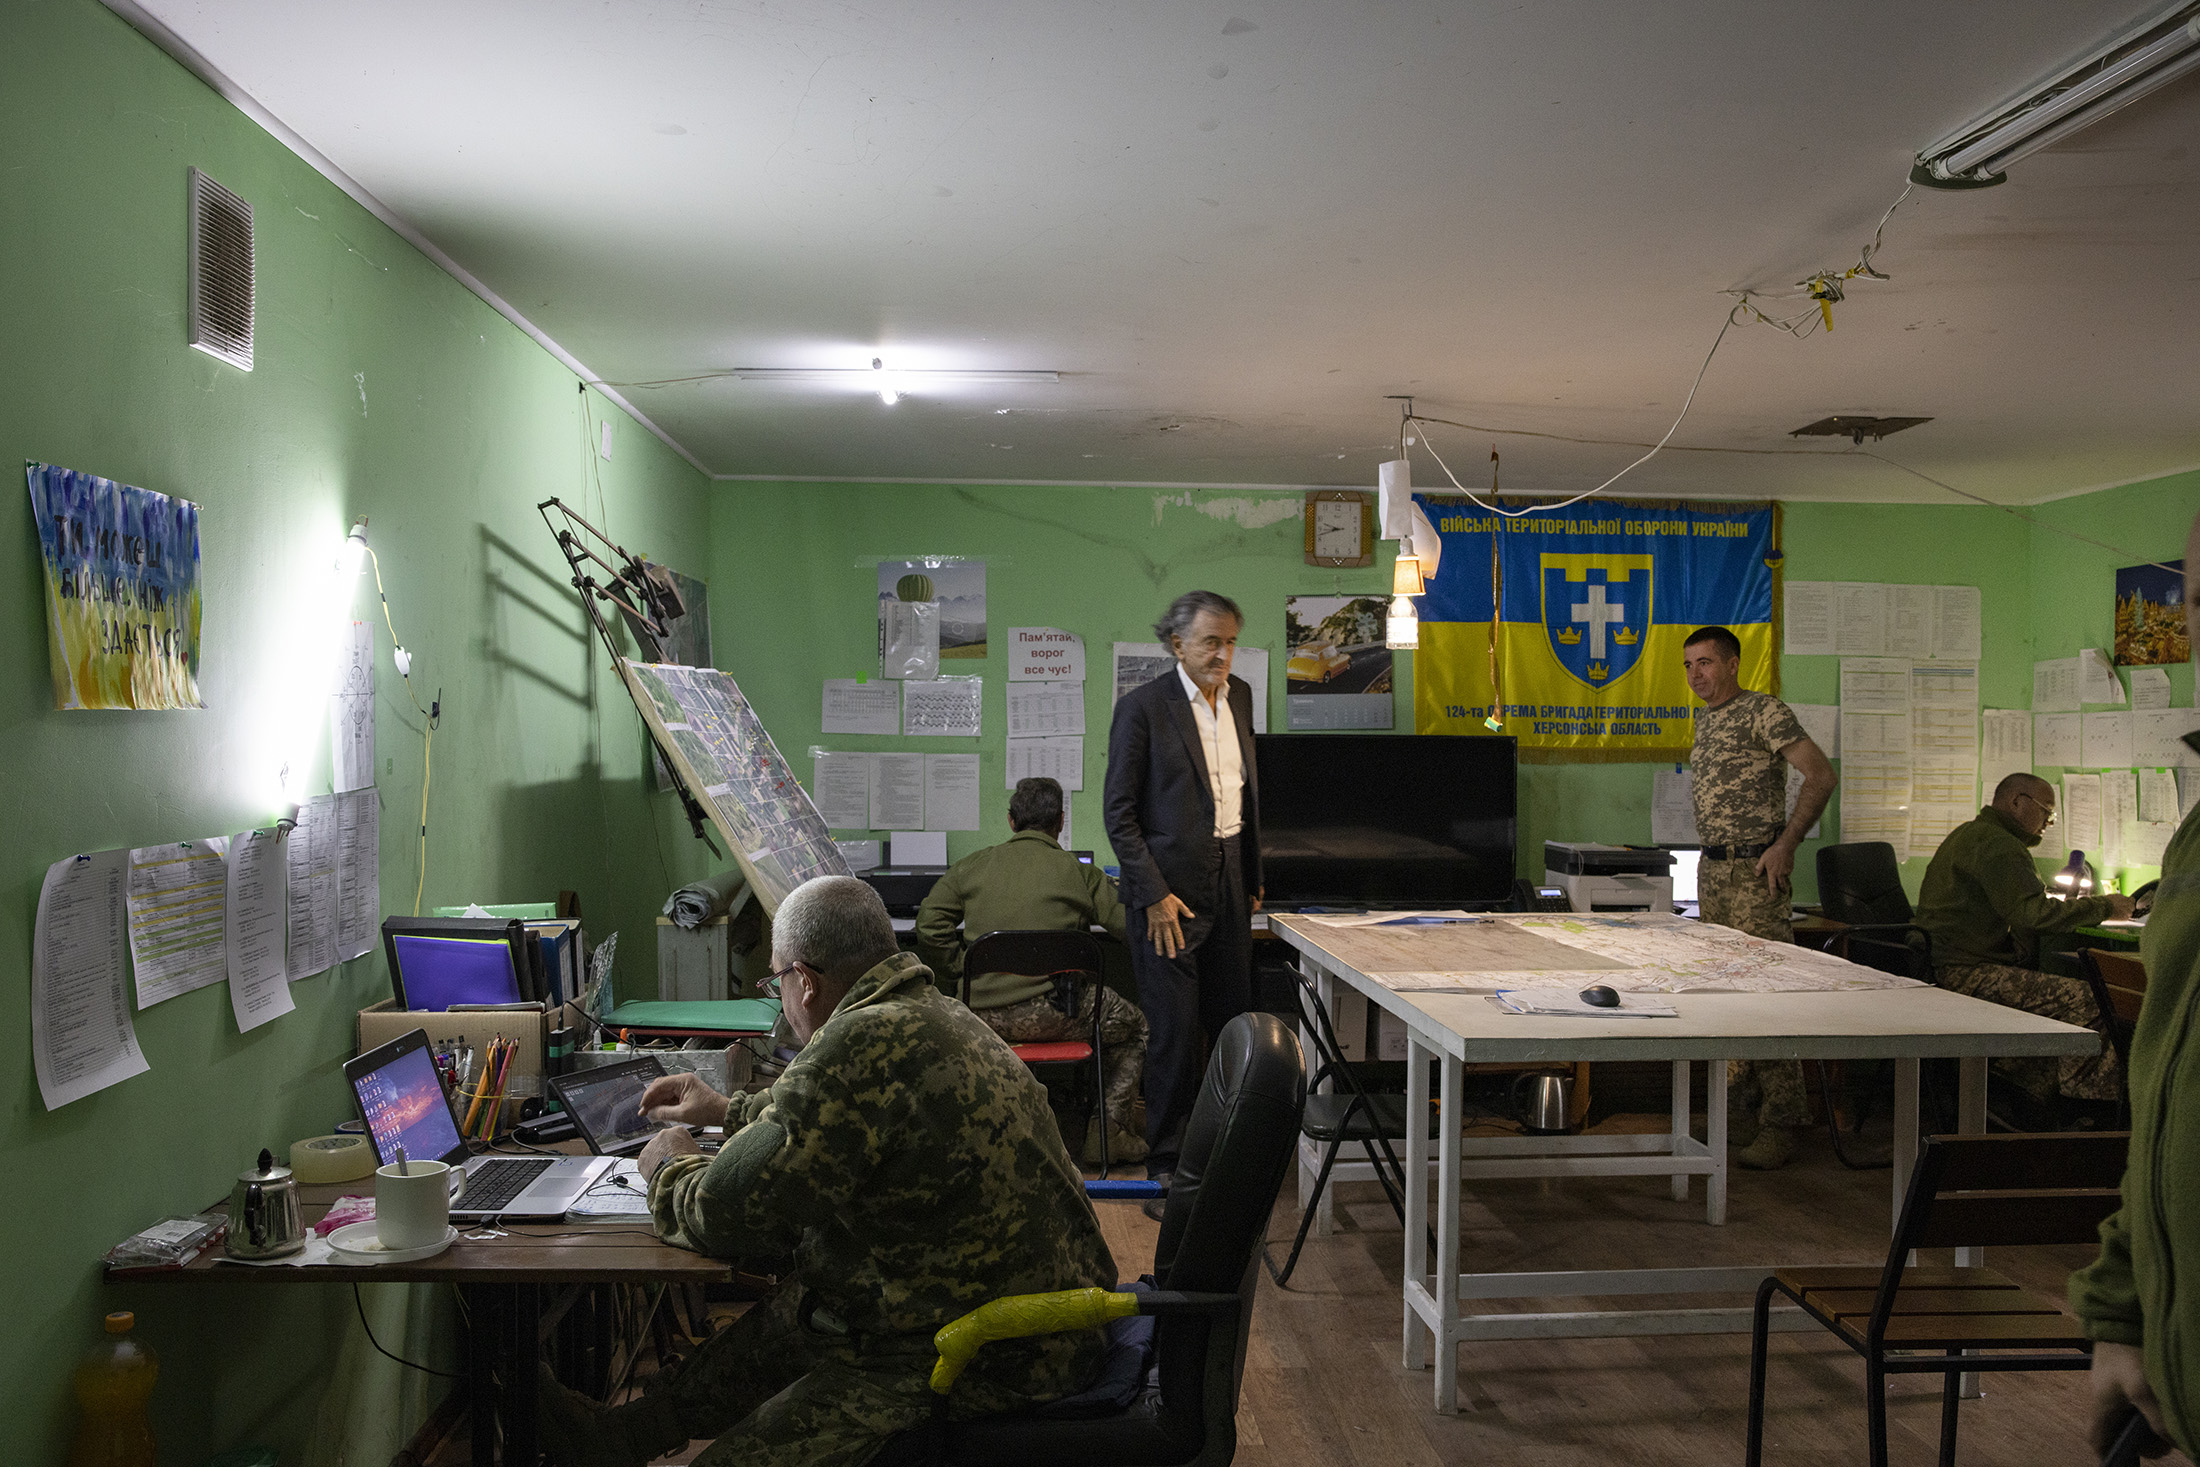 Bernard-Henri Lévy est debout dans une salle où des militaires en uniforme travaillent à des bureaux sur des ordinateurs. Sur les murs sont accrochés des drapeaux aux couleurs de l'Ukraine.